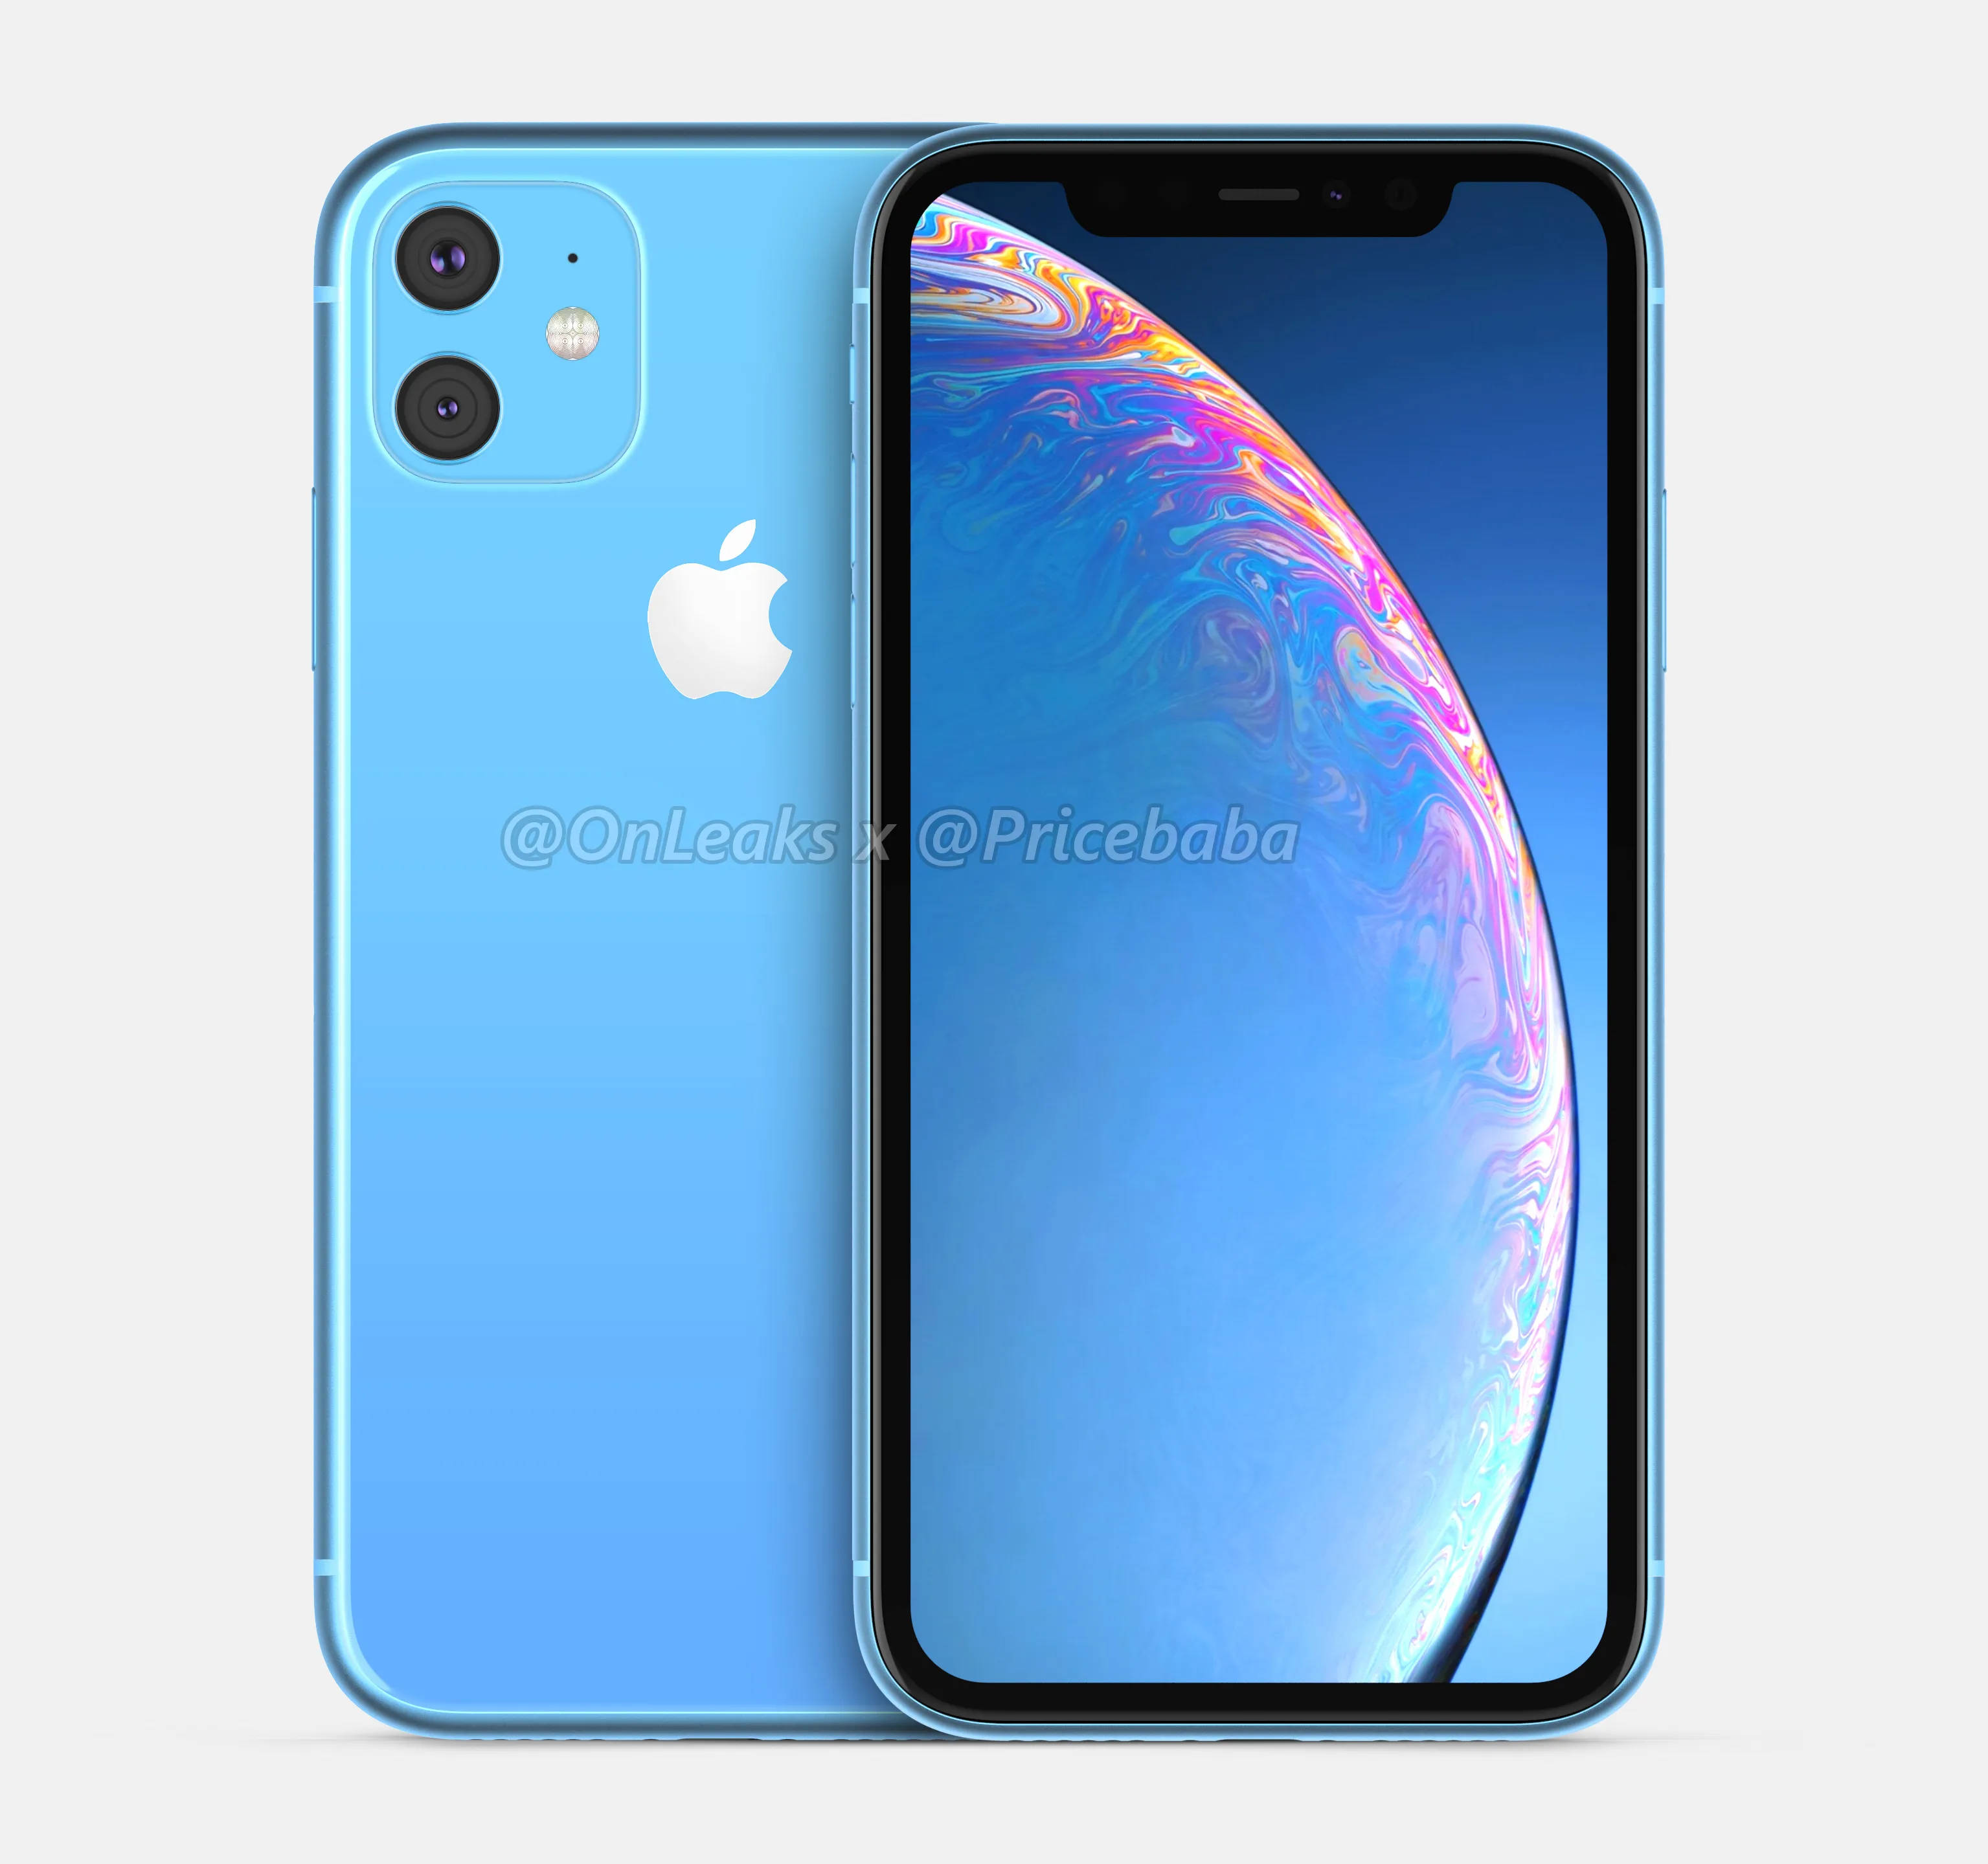 Apple iPhone 2019 XR 2 kiedy premiera rendery plotki przecieki specyfikacja techniczna